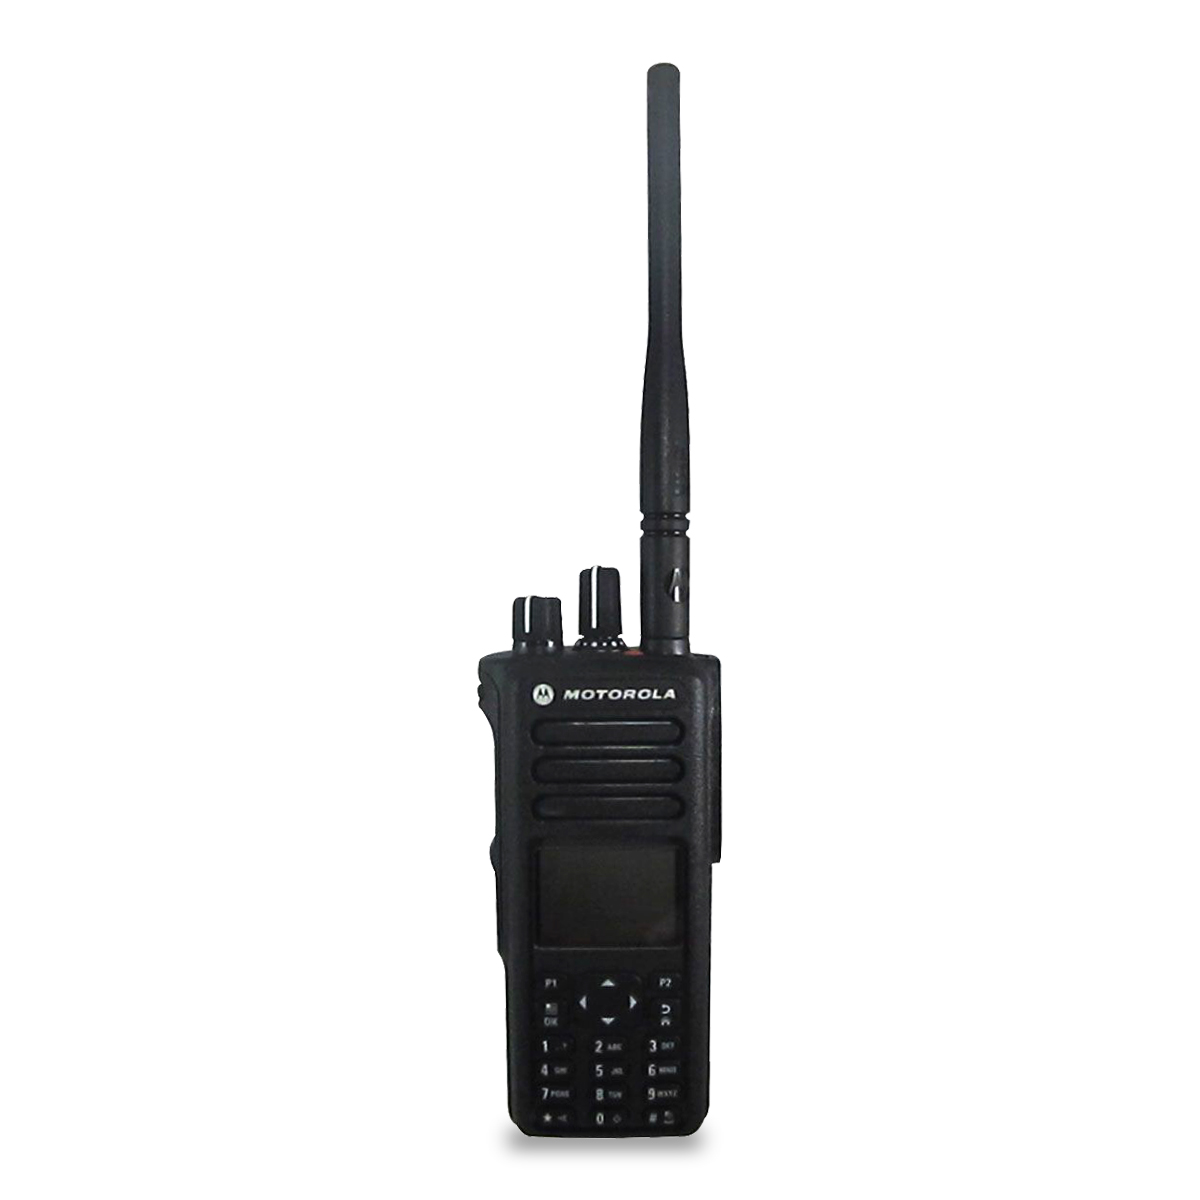 Radio Motorola Dep570e Digital Lah02rdh9ua1an Uhf 403 527 Mhz Telser 9079